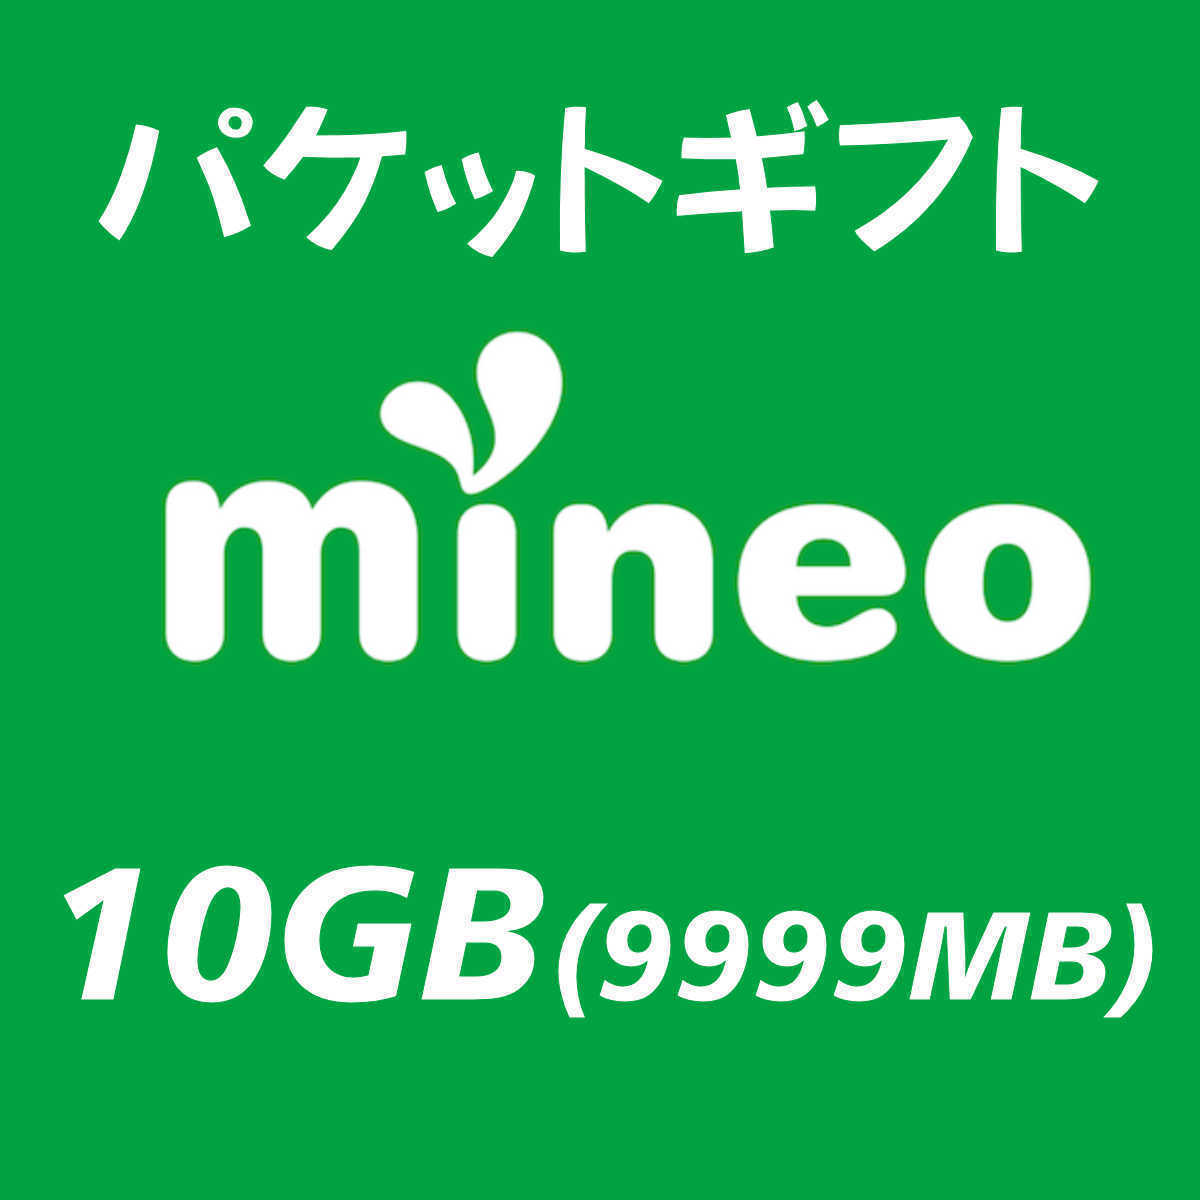 10GB(9999MB) マイネオ　パケットギフト mineo　②_画像1